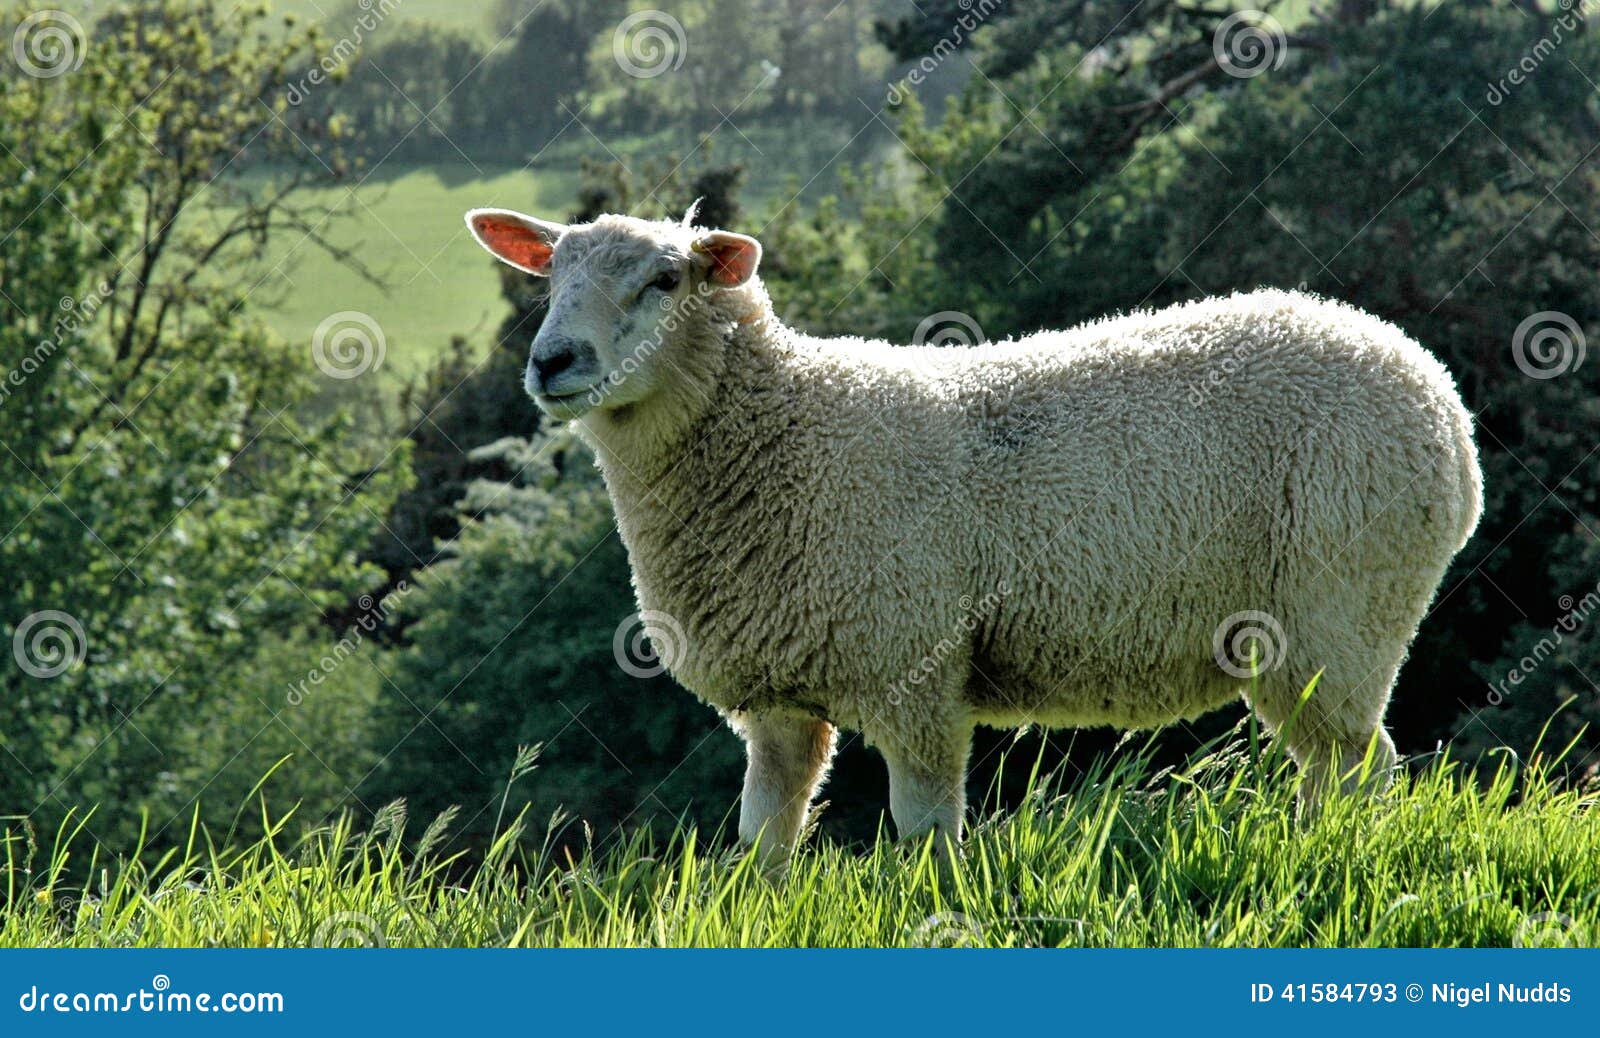 somerset sheep